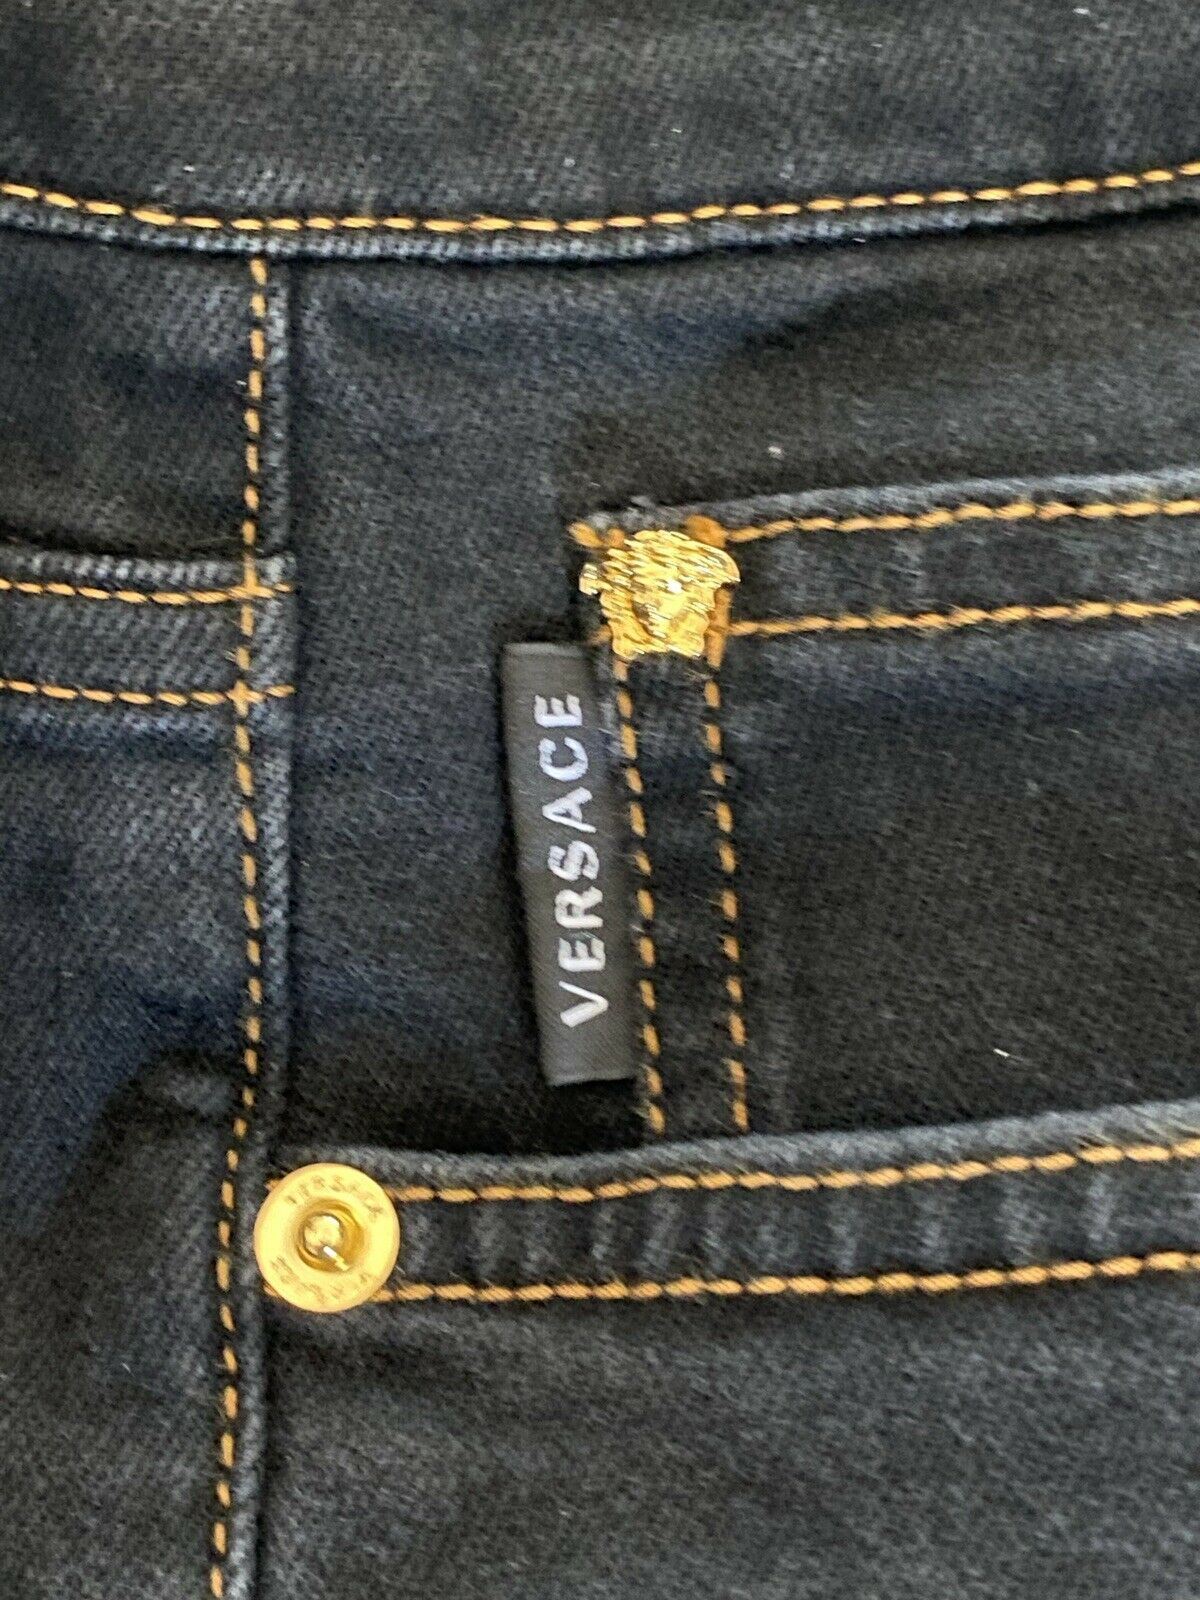 Neu mit Etikett: 450 $ Versace Herren-Denim-Jeans in Schwarz, Größe 33 US A84998S, hergestellt in Italien